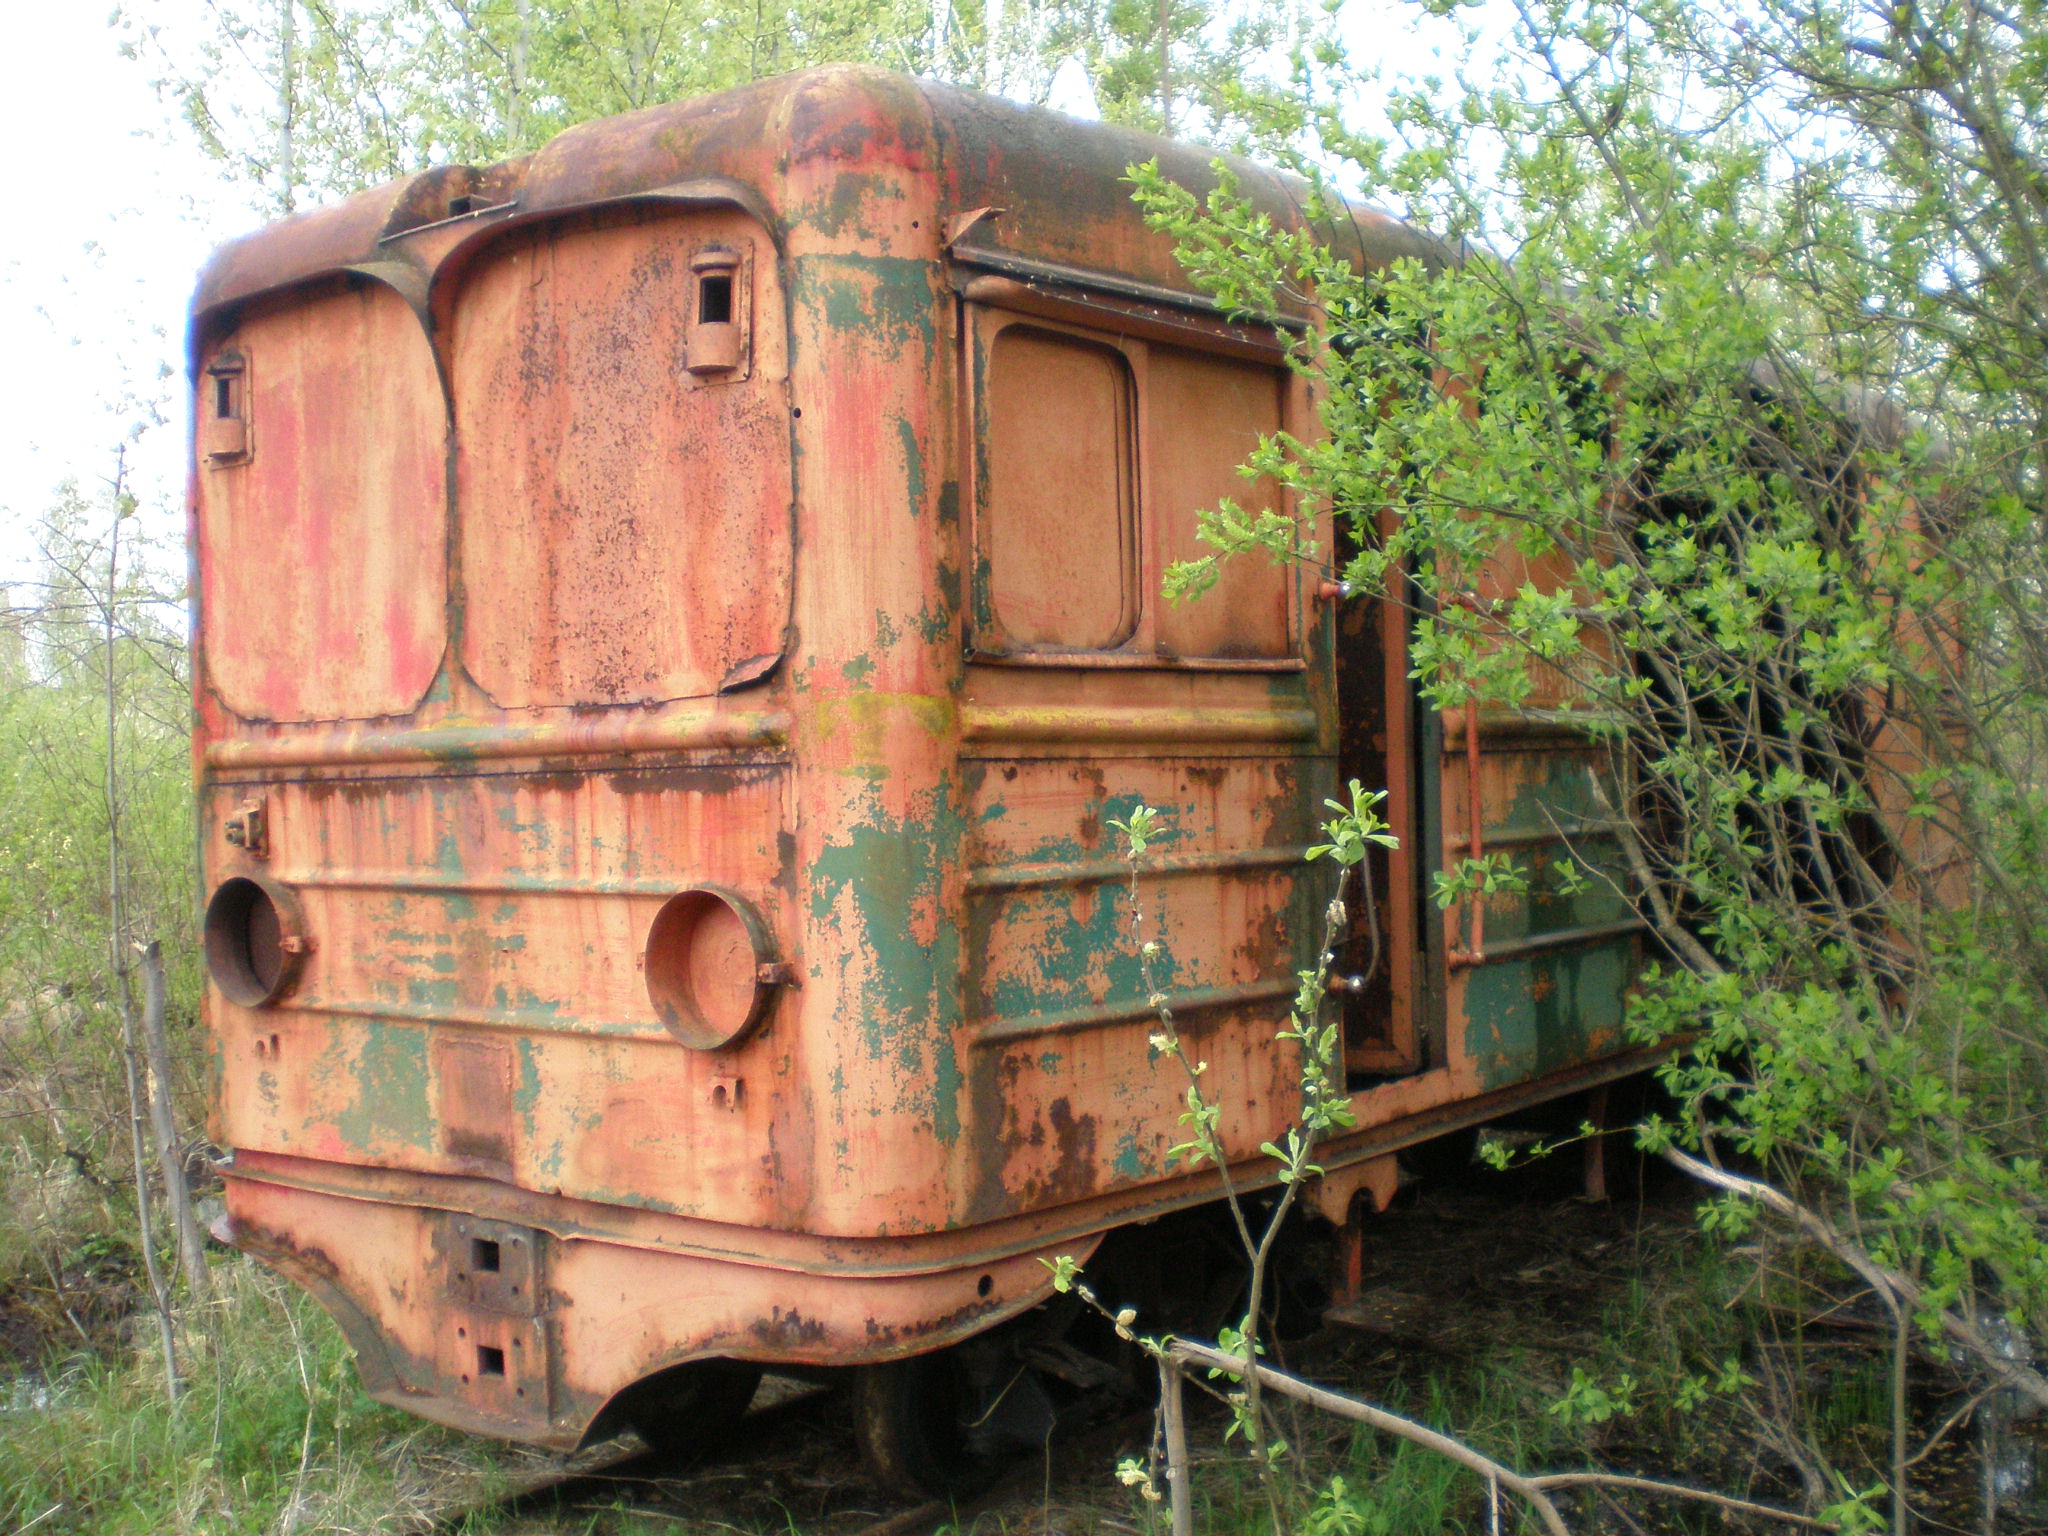 Узкоколейная железная дорога Васильевского предприятия промышленного железнодорожного транспорта  — фотографии, сделанные в 2008 году (часть 3)